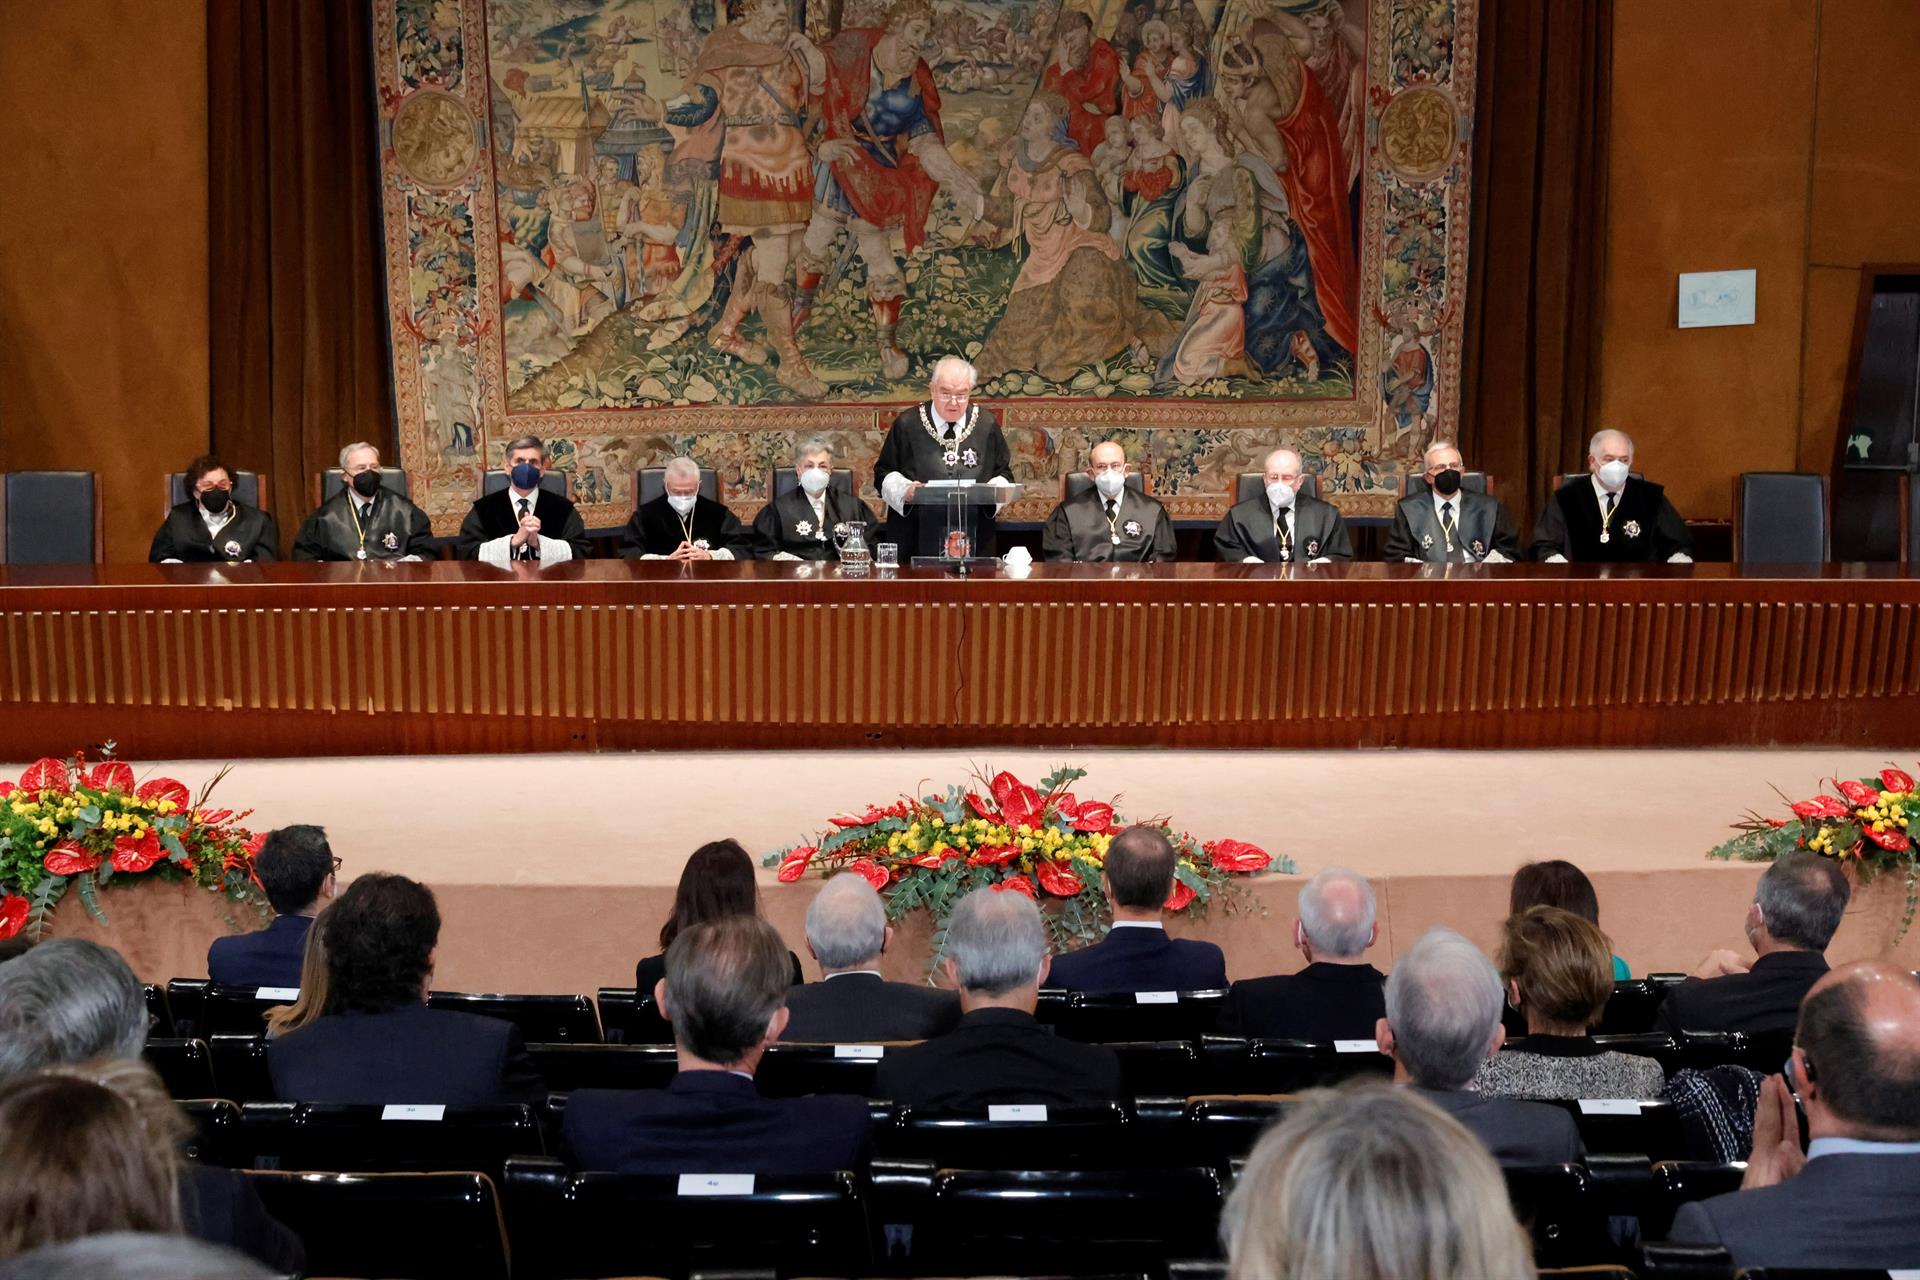 El presidente saliente del Tribunal Constitucional, Juan José González Rivas (c), pronuncia un discurso durante la toma de posesión de los nuevos cuatro jueces del órgano este jueves en la sede del Tribunal Constitucional, en Madrid. EFE/Zipi